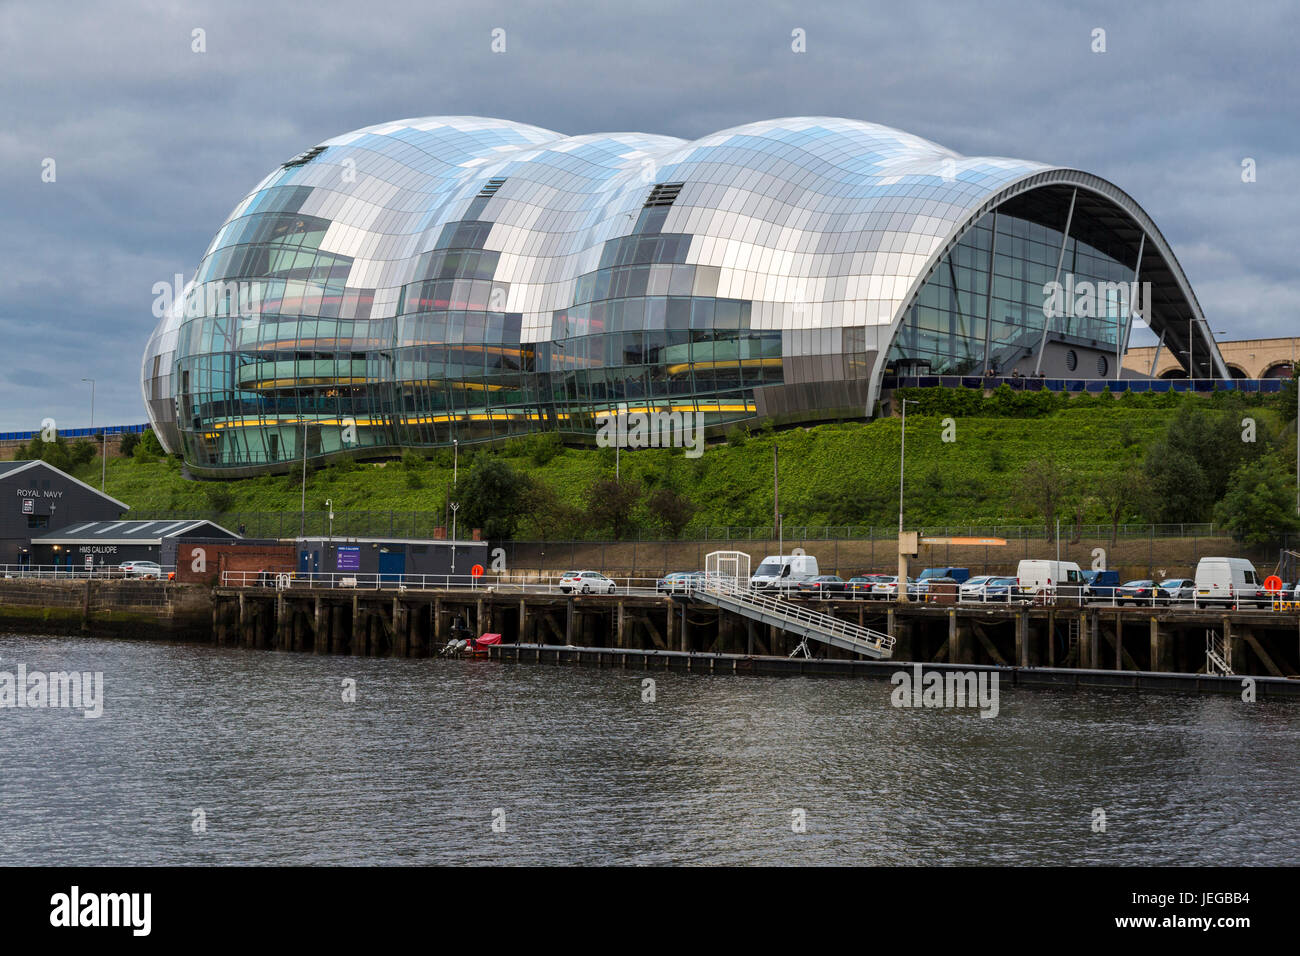 Newcastle-upon-Tyne, Angleterre, Royaume-Uni. Le Sage Gateshead en salle de concerts, de l'autre côté de la rivière Tyne. Banque D'Images